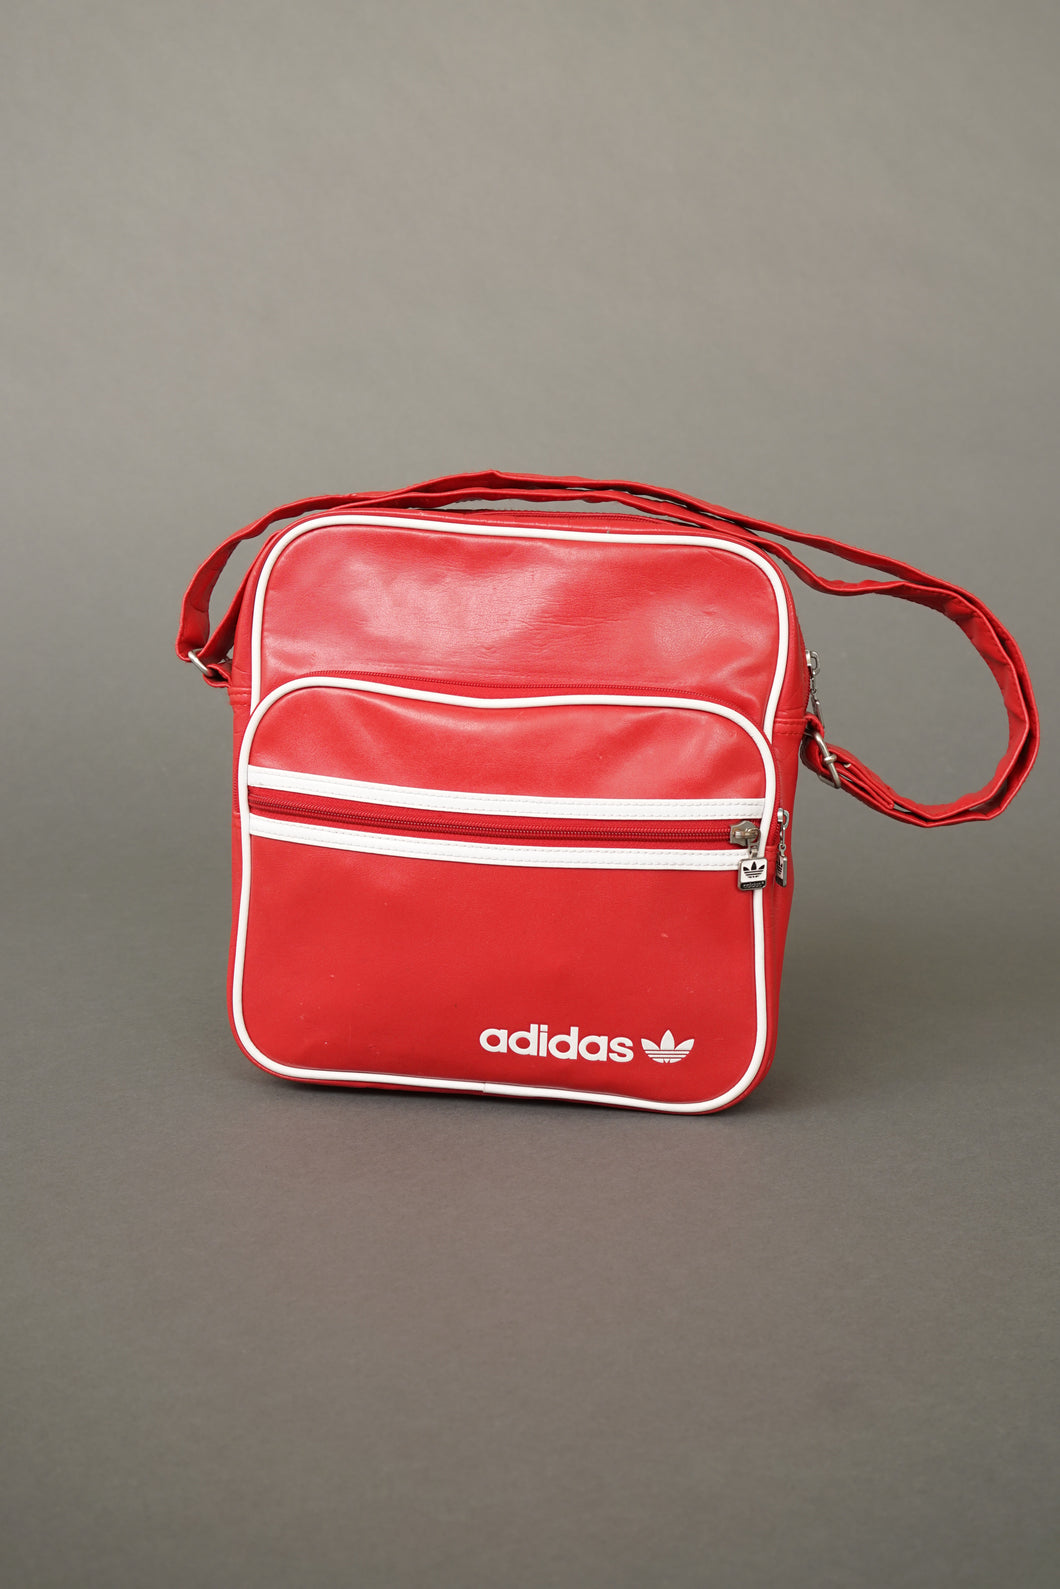 Classique sac vintage Adidas rouge